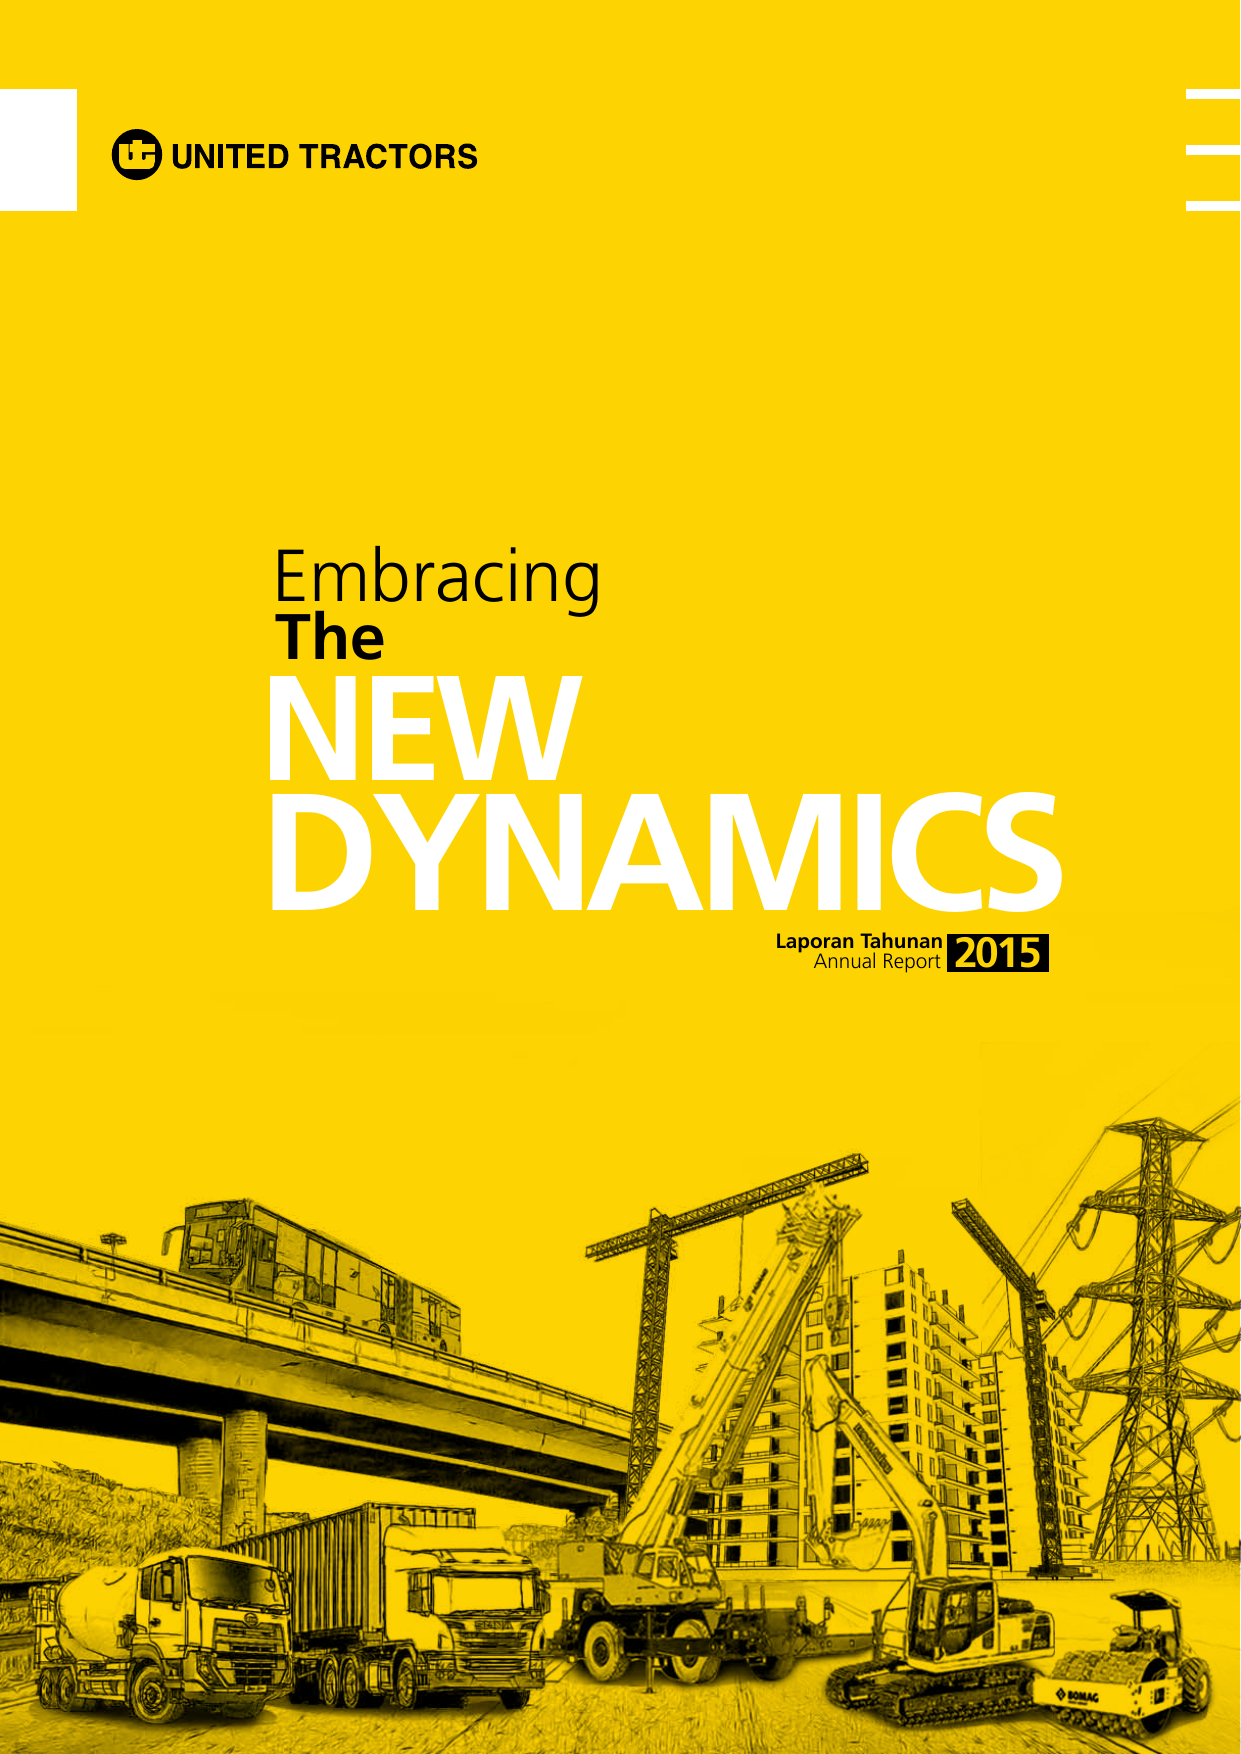 Tahunan Annual Report 2015 Laporan Tahunan 2015 Annual Report Sekapur Sirih Introduction Embracing The NEW Dynamics Dengan perkembangan pasar global dan